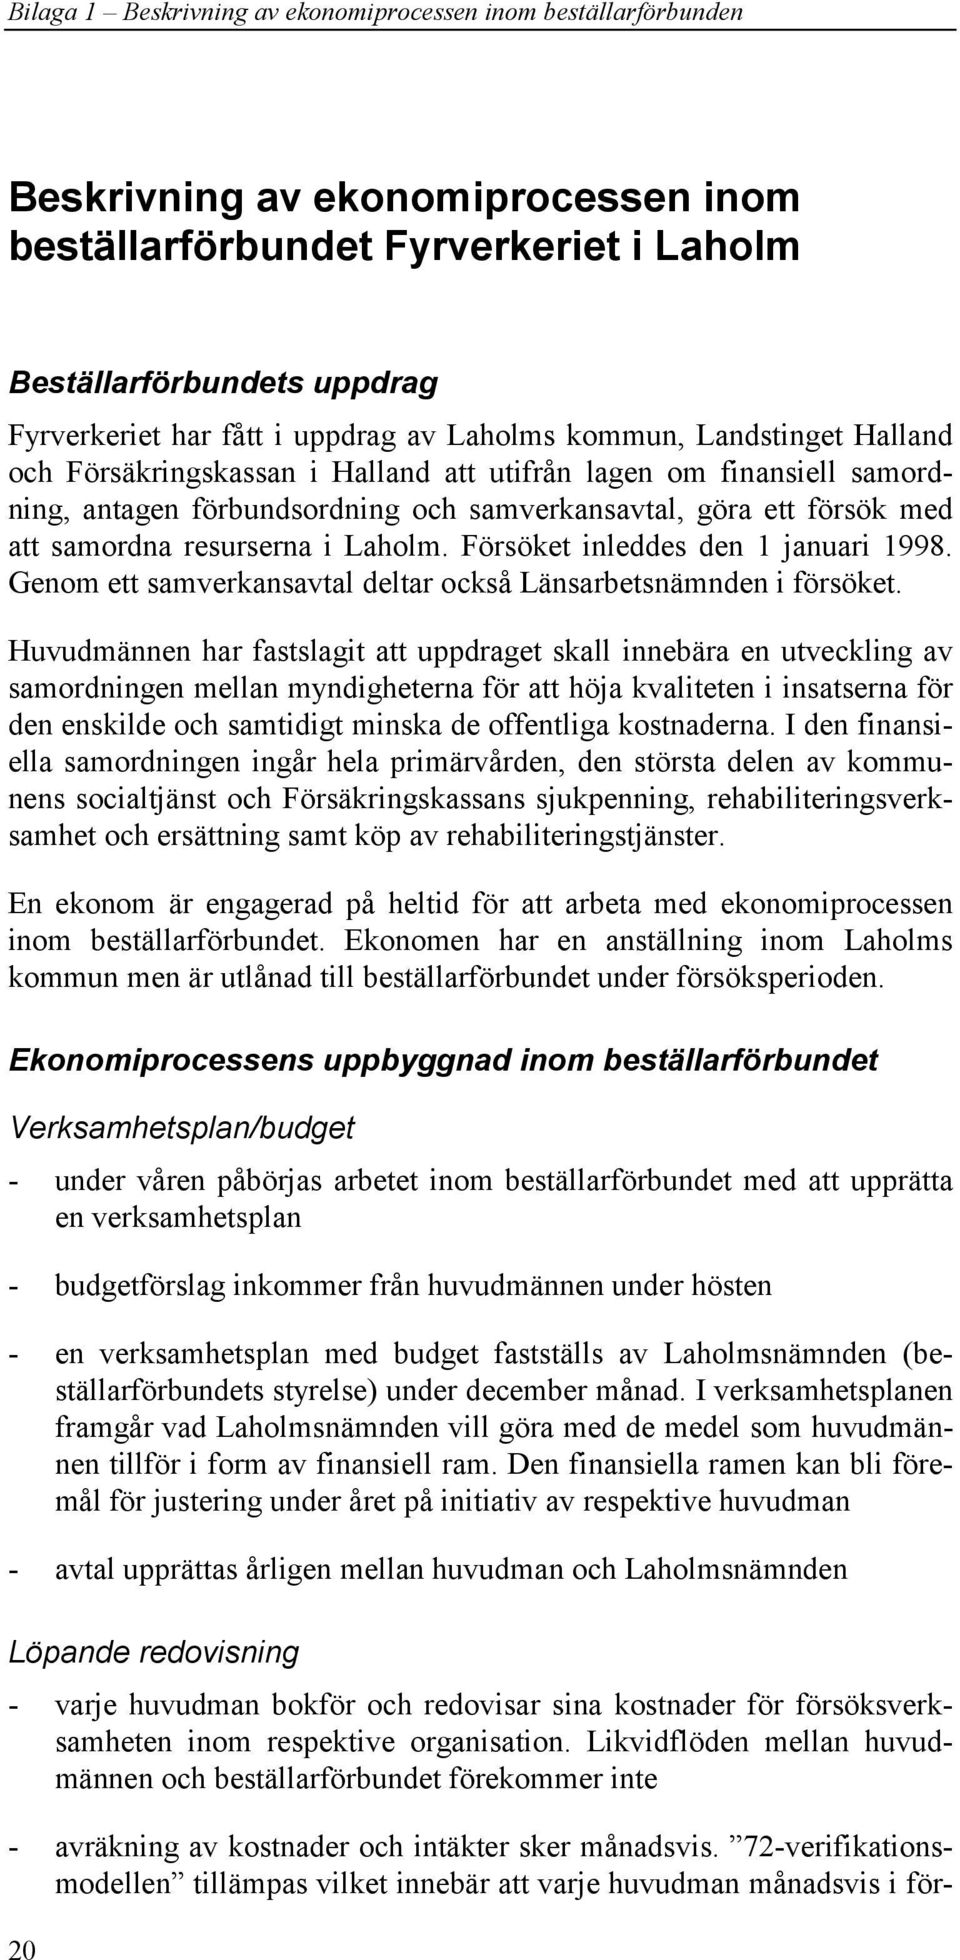 samordna resurserna i Laholm. Försöket inleddes den 1 januari 1998. Genom ett samverkansavtal deltar också Länsarbetsnämnden i försöket.